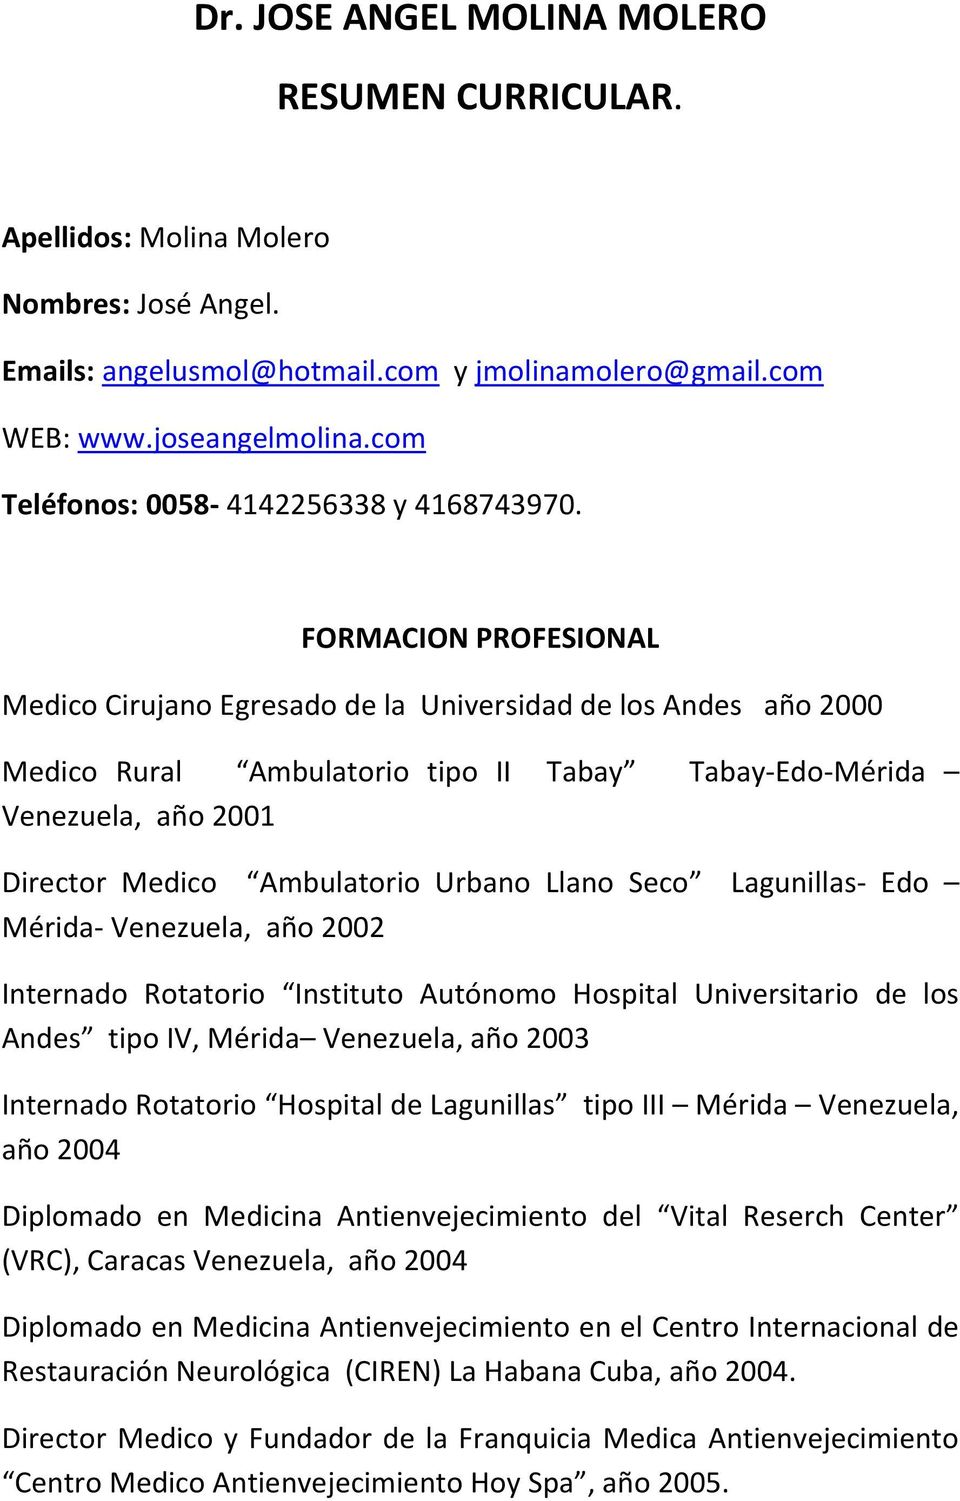 FORMACION PROFESIONAL Medico Cirujano Egresado de la Universidad de los Andes año 2000 Medico Rural Ambulatorio tipo II Tabay Tabay-Edo-Mérida Venezuela, año 2001 Director Medico Ambulatorio Urbano